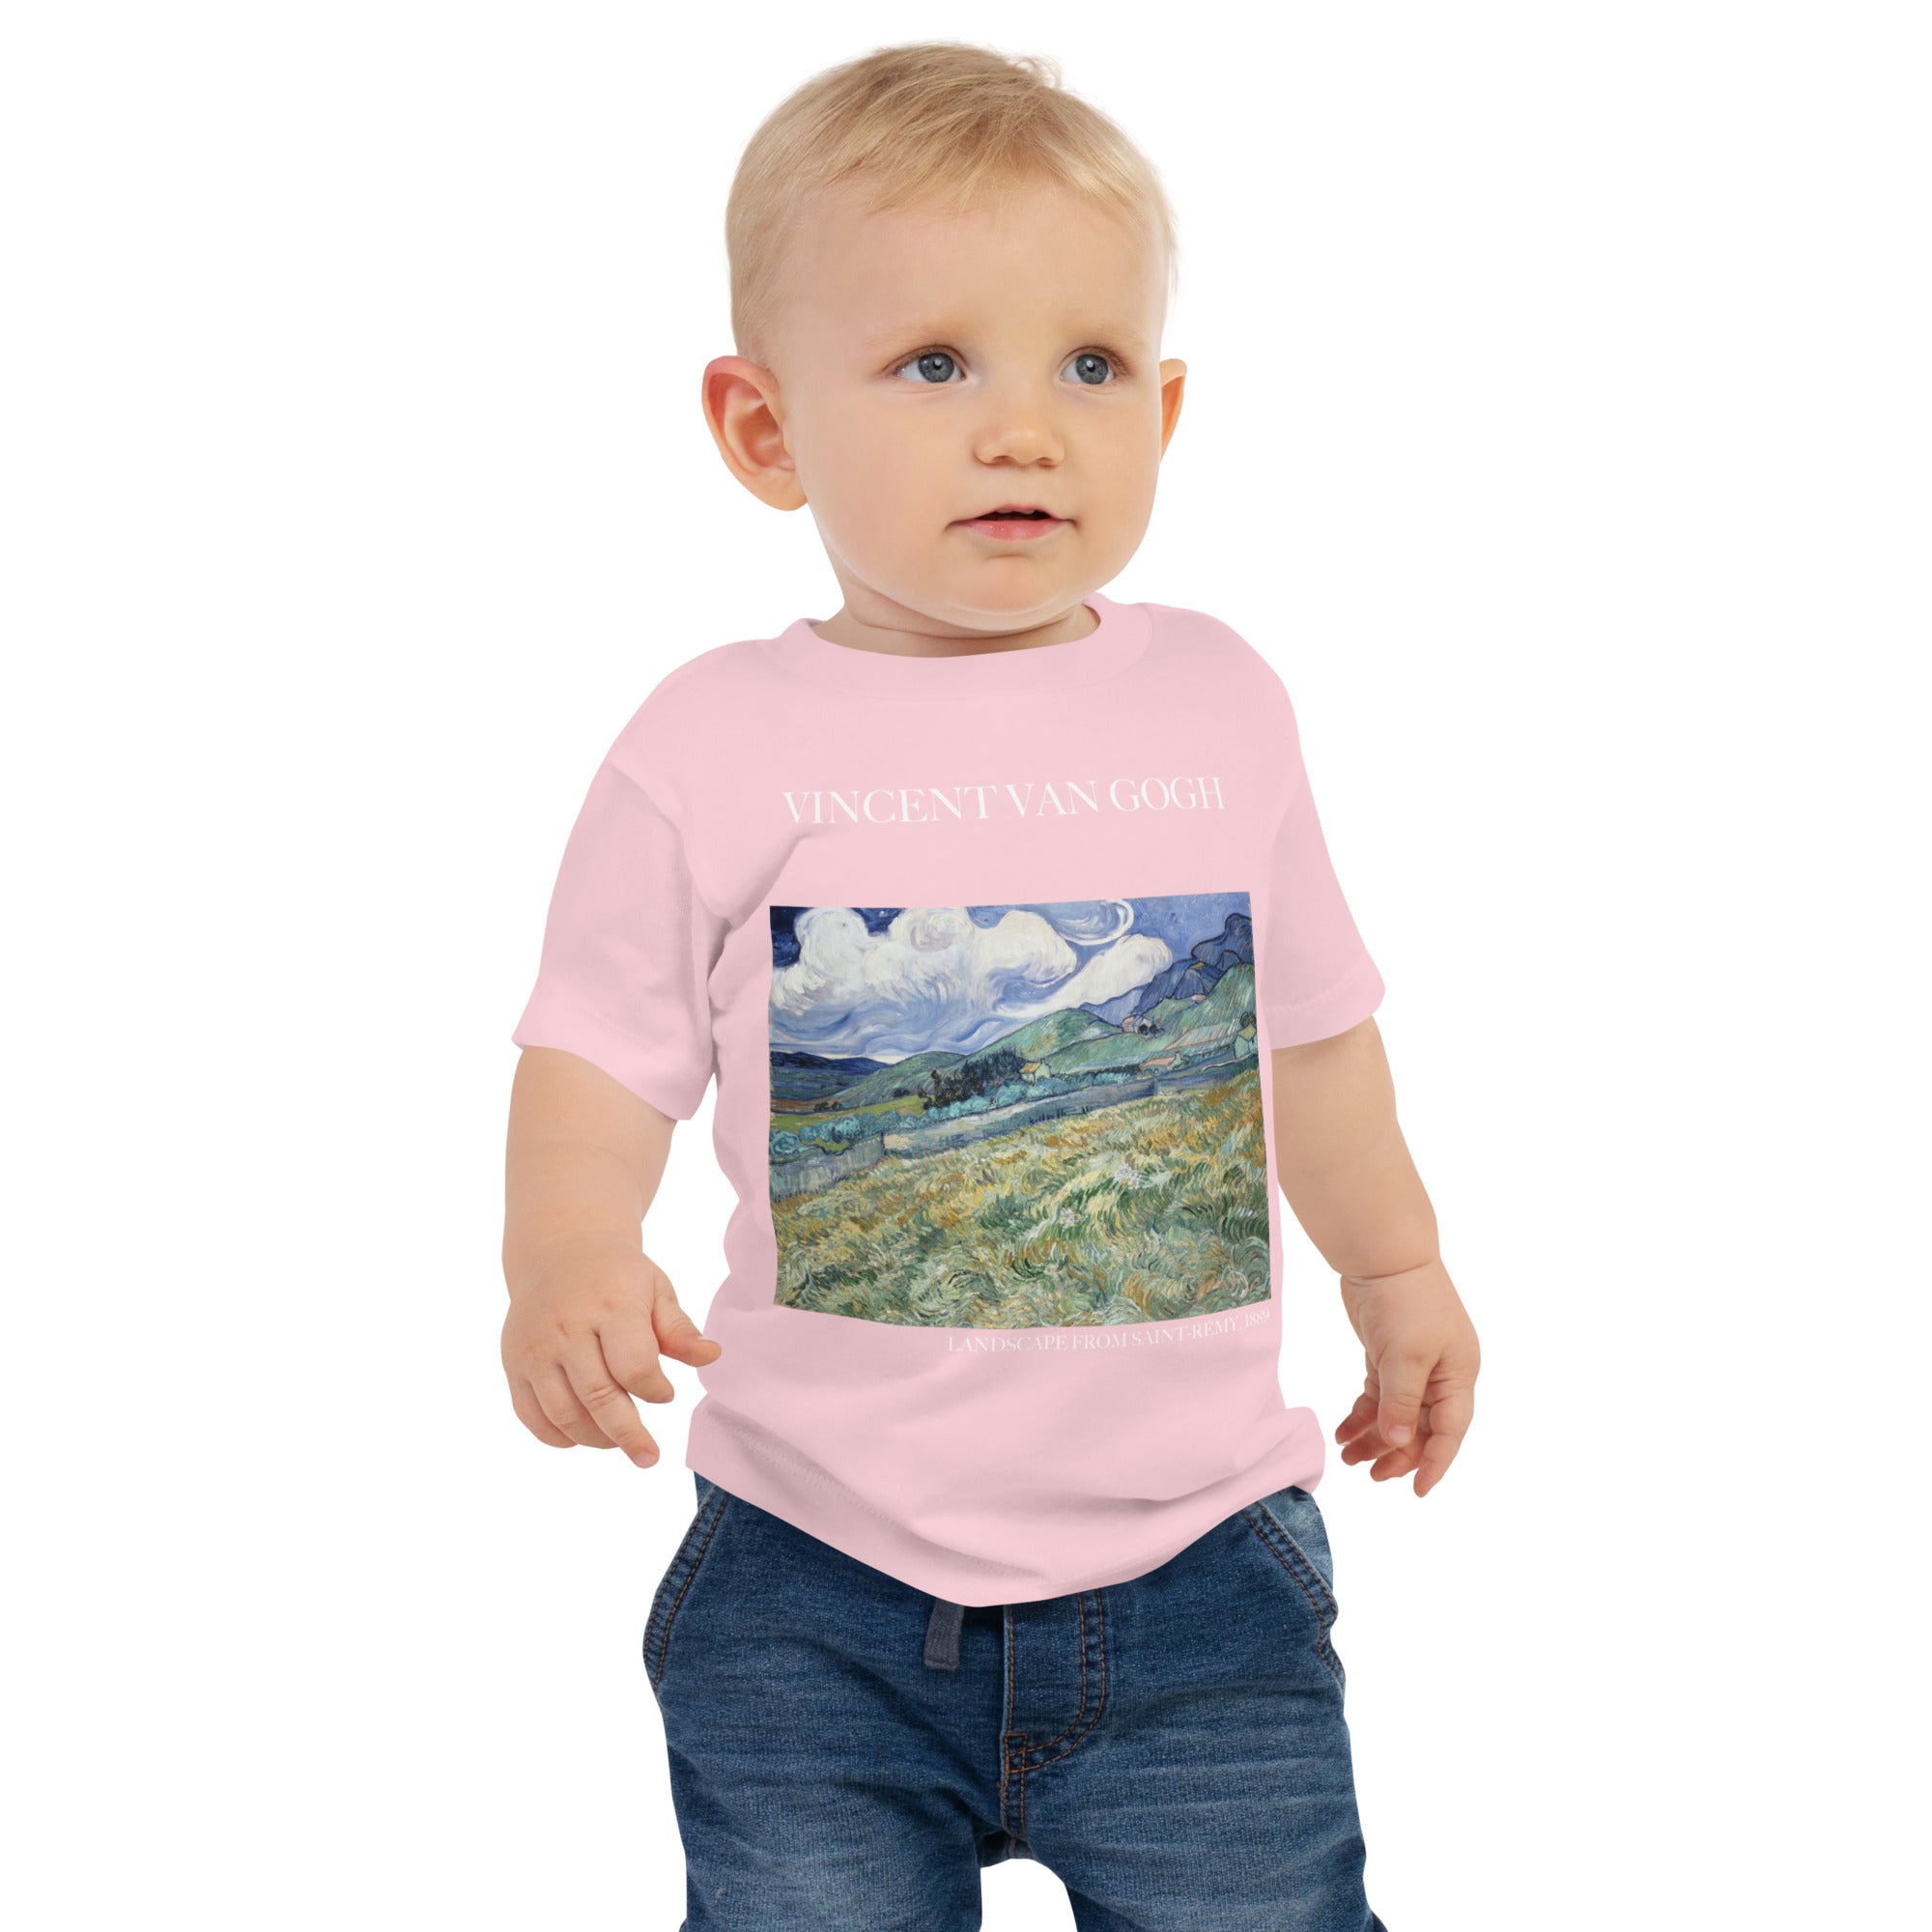 Vincent van Gogh 'Landscape from Saint-Rémy' Famous Painting Baby Staple T-Shirt | Premium Baby Art Tee